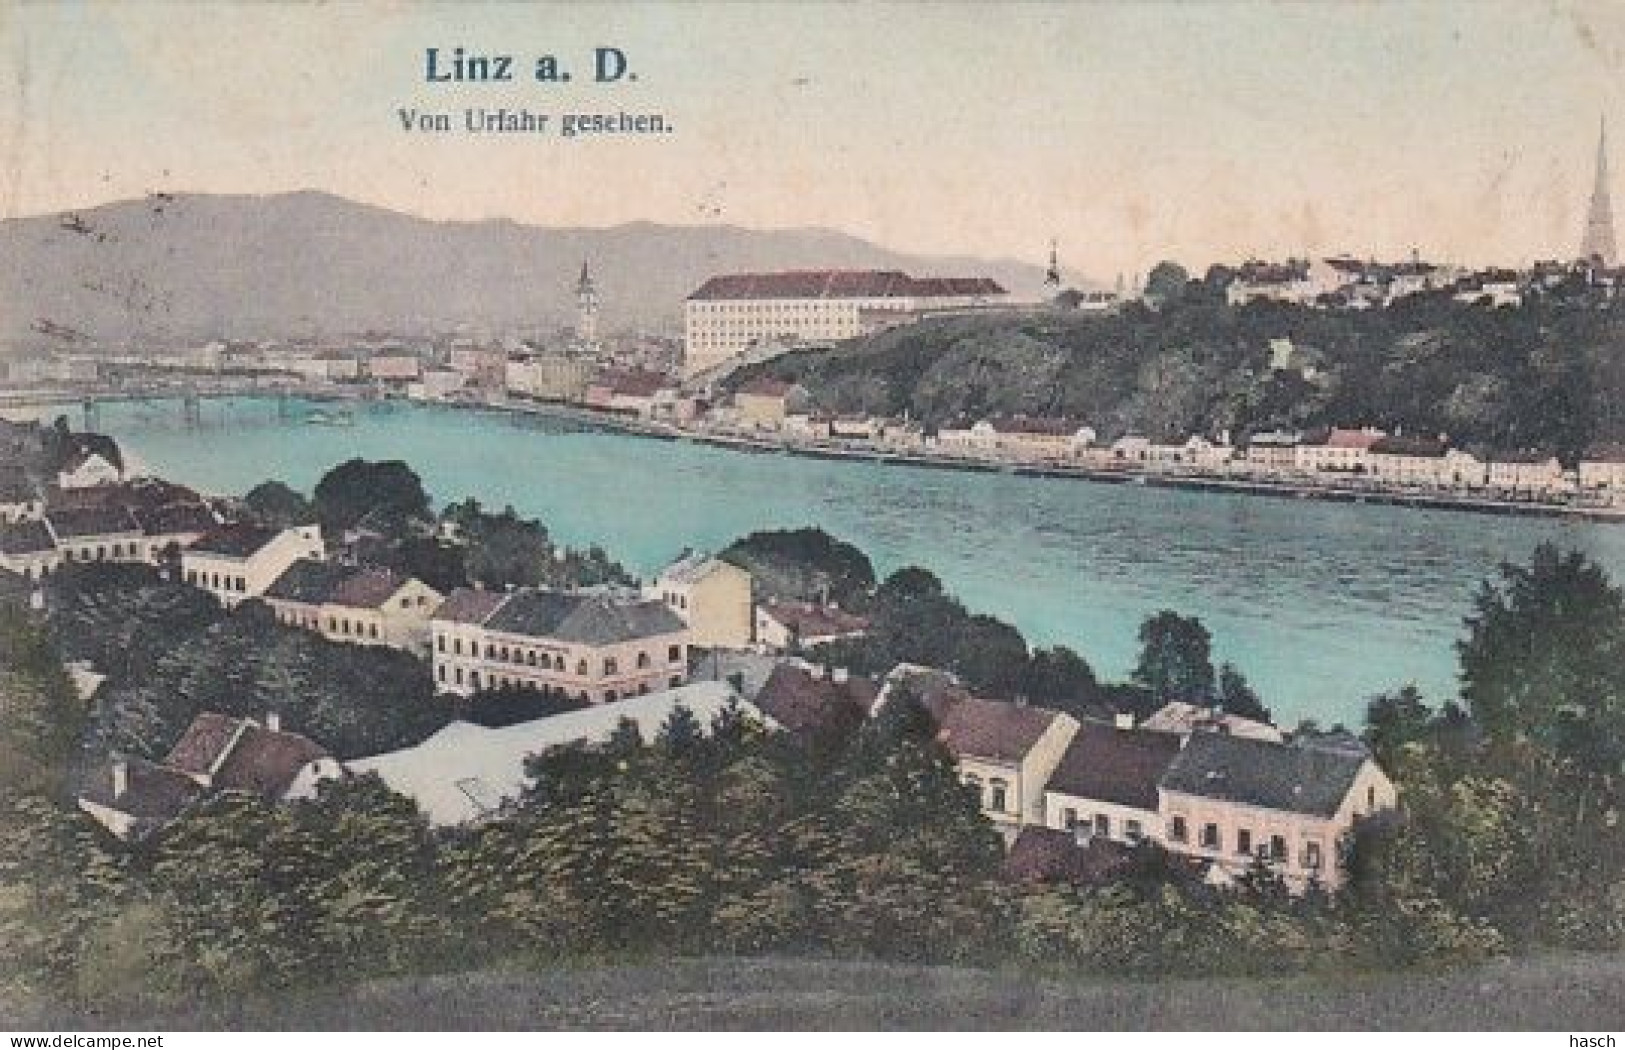 3736 97 Linz A D, Von Urfahr Geschen. 1908.  - Linz